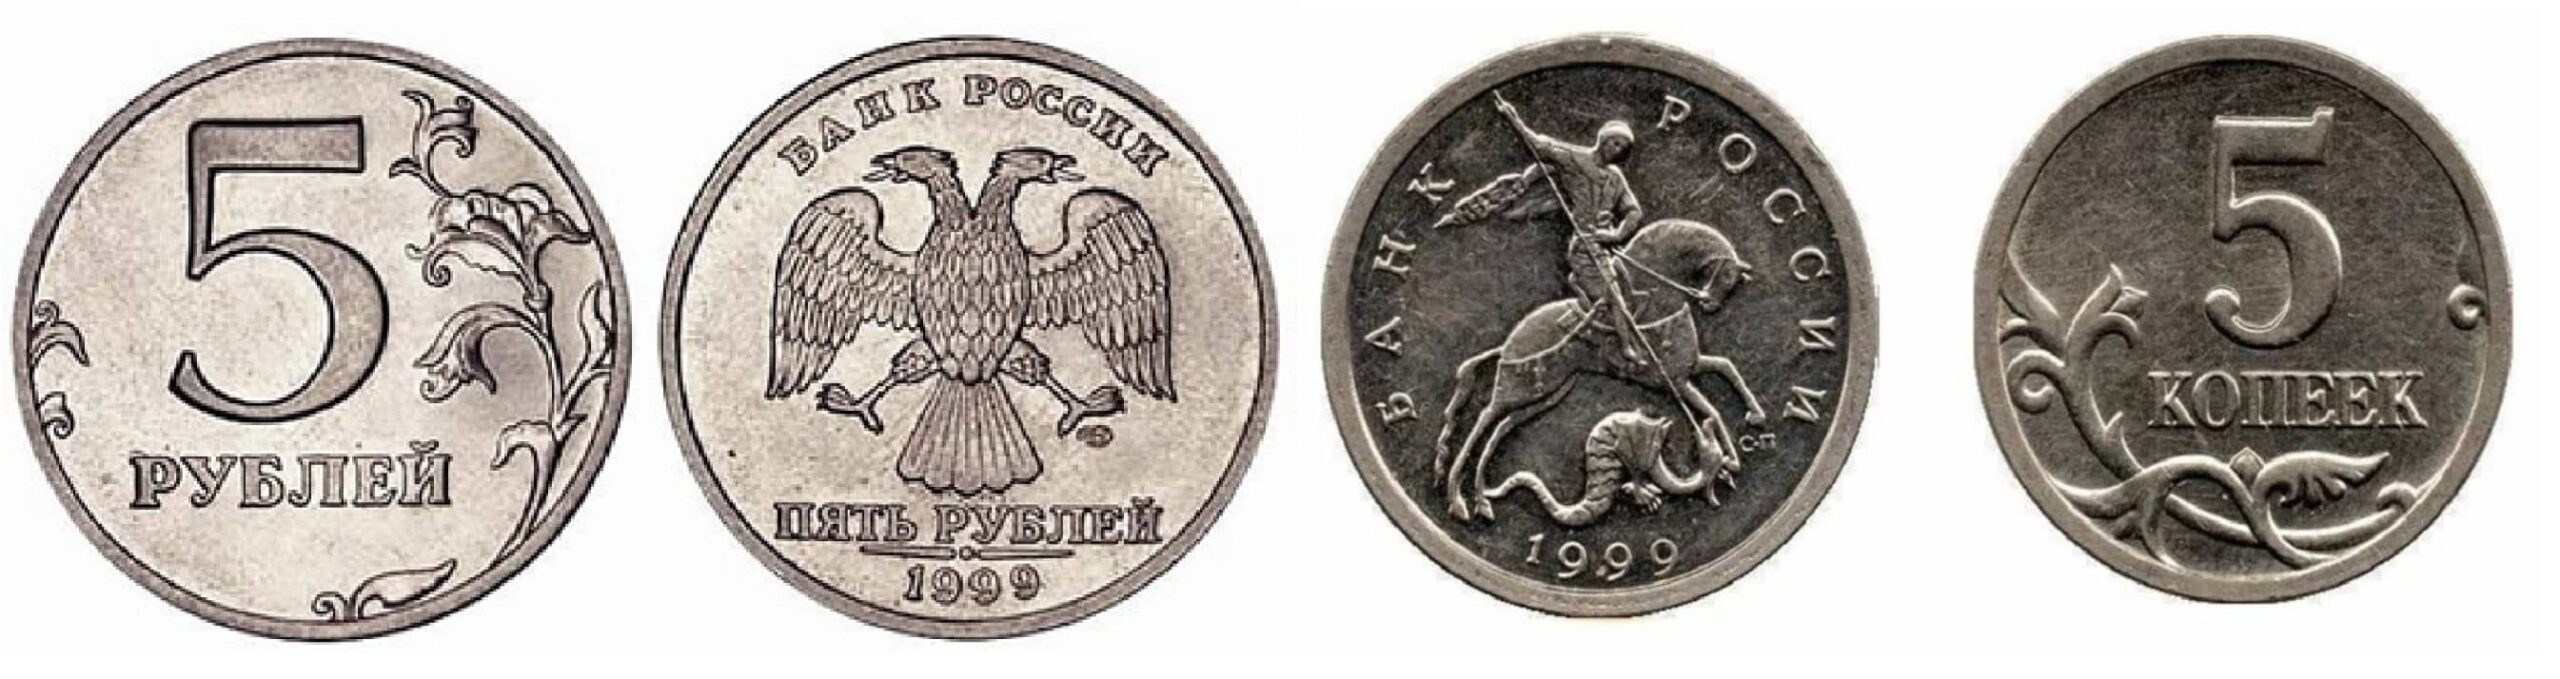 Старые 5 рублей. 5 Копеек 1999. Привидение монета. Польша 2 гроша 1999 год - герб.